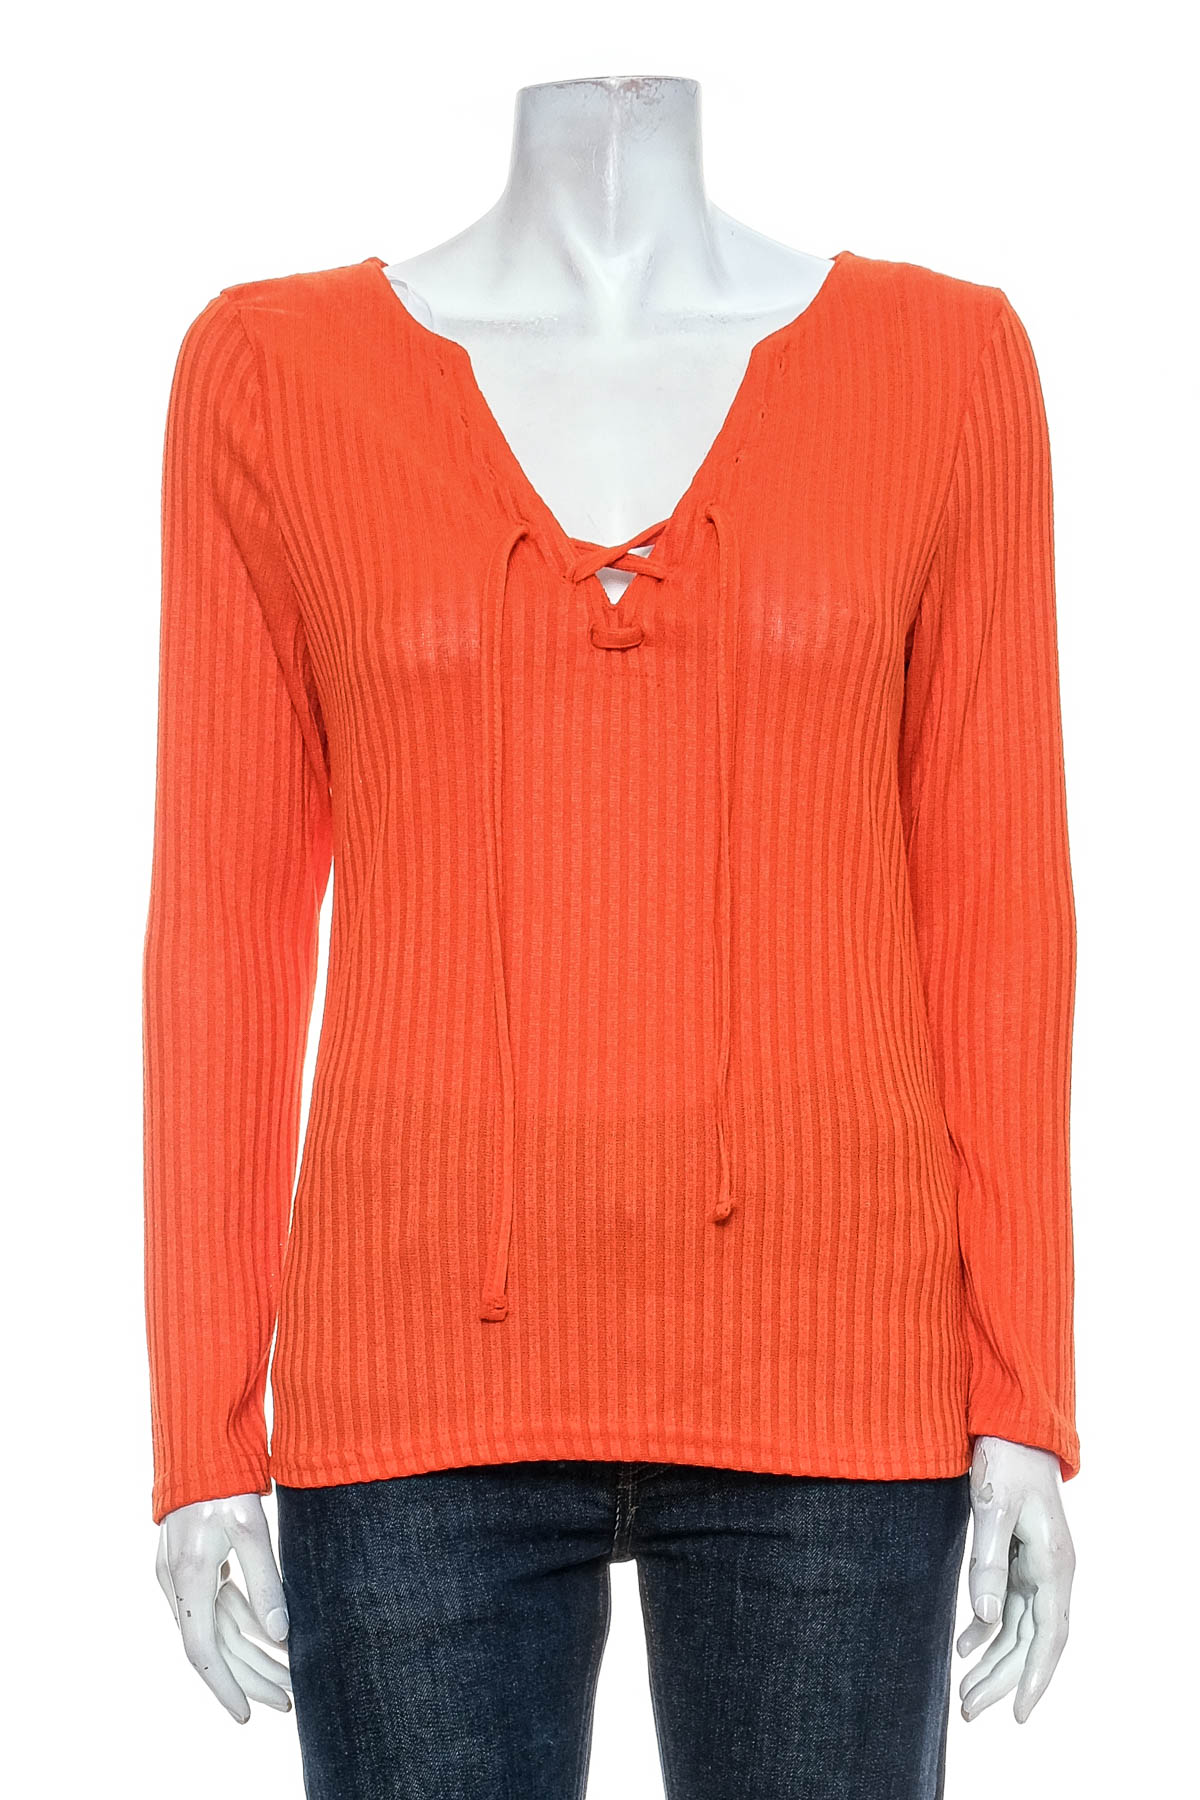 Women's sweater - Janina - 0